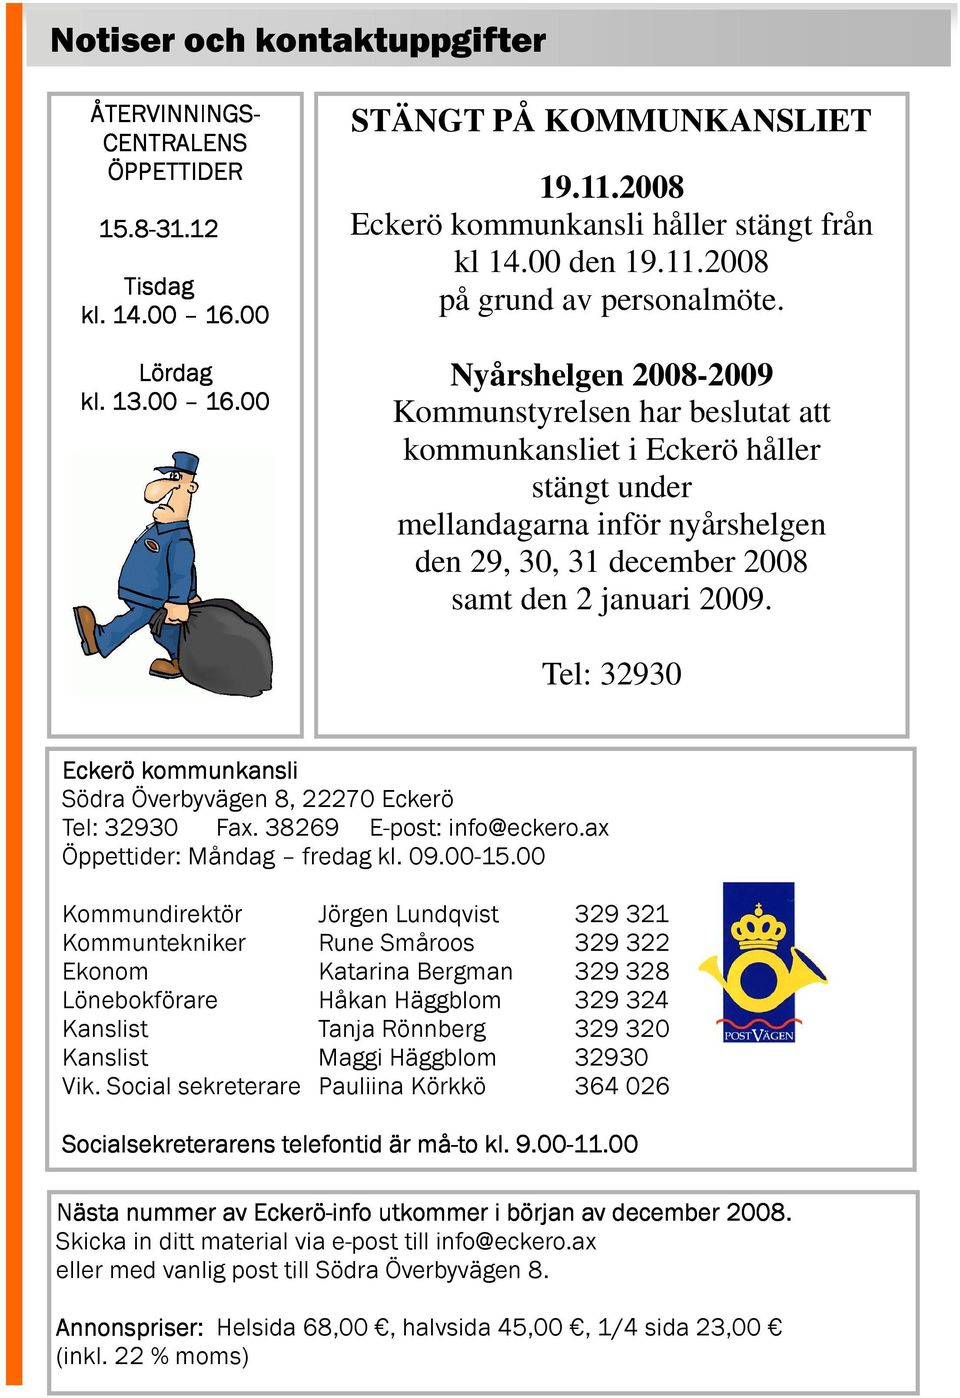 Nyårshelgen 2008-2009 Kommunstyrelsen har beslutat att kommunkansliet i Eckerö håller stängt under mellandagarna inför nyårshelgen den 29, 30, 31 december 2008 samt den 2 januari 2009.